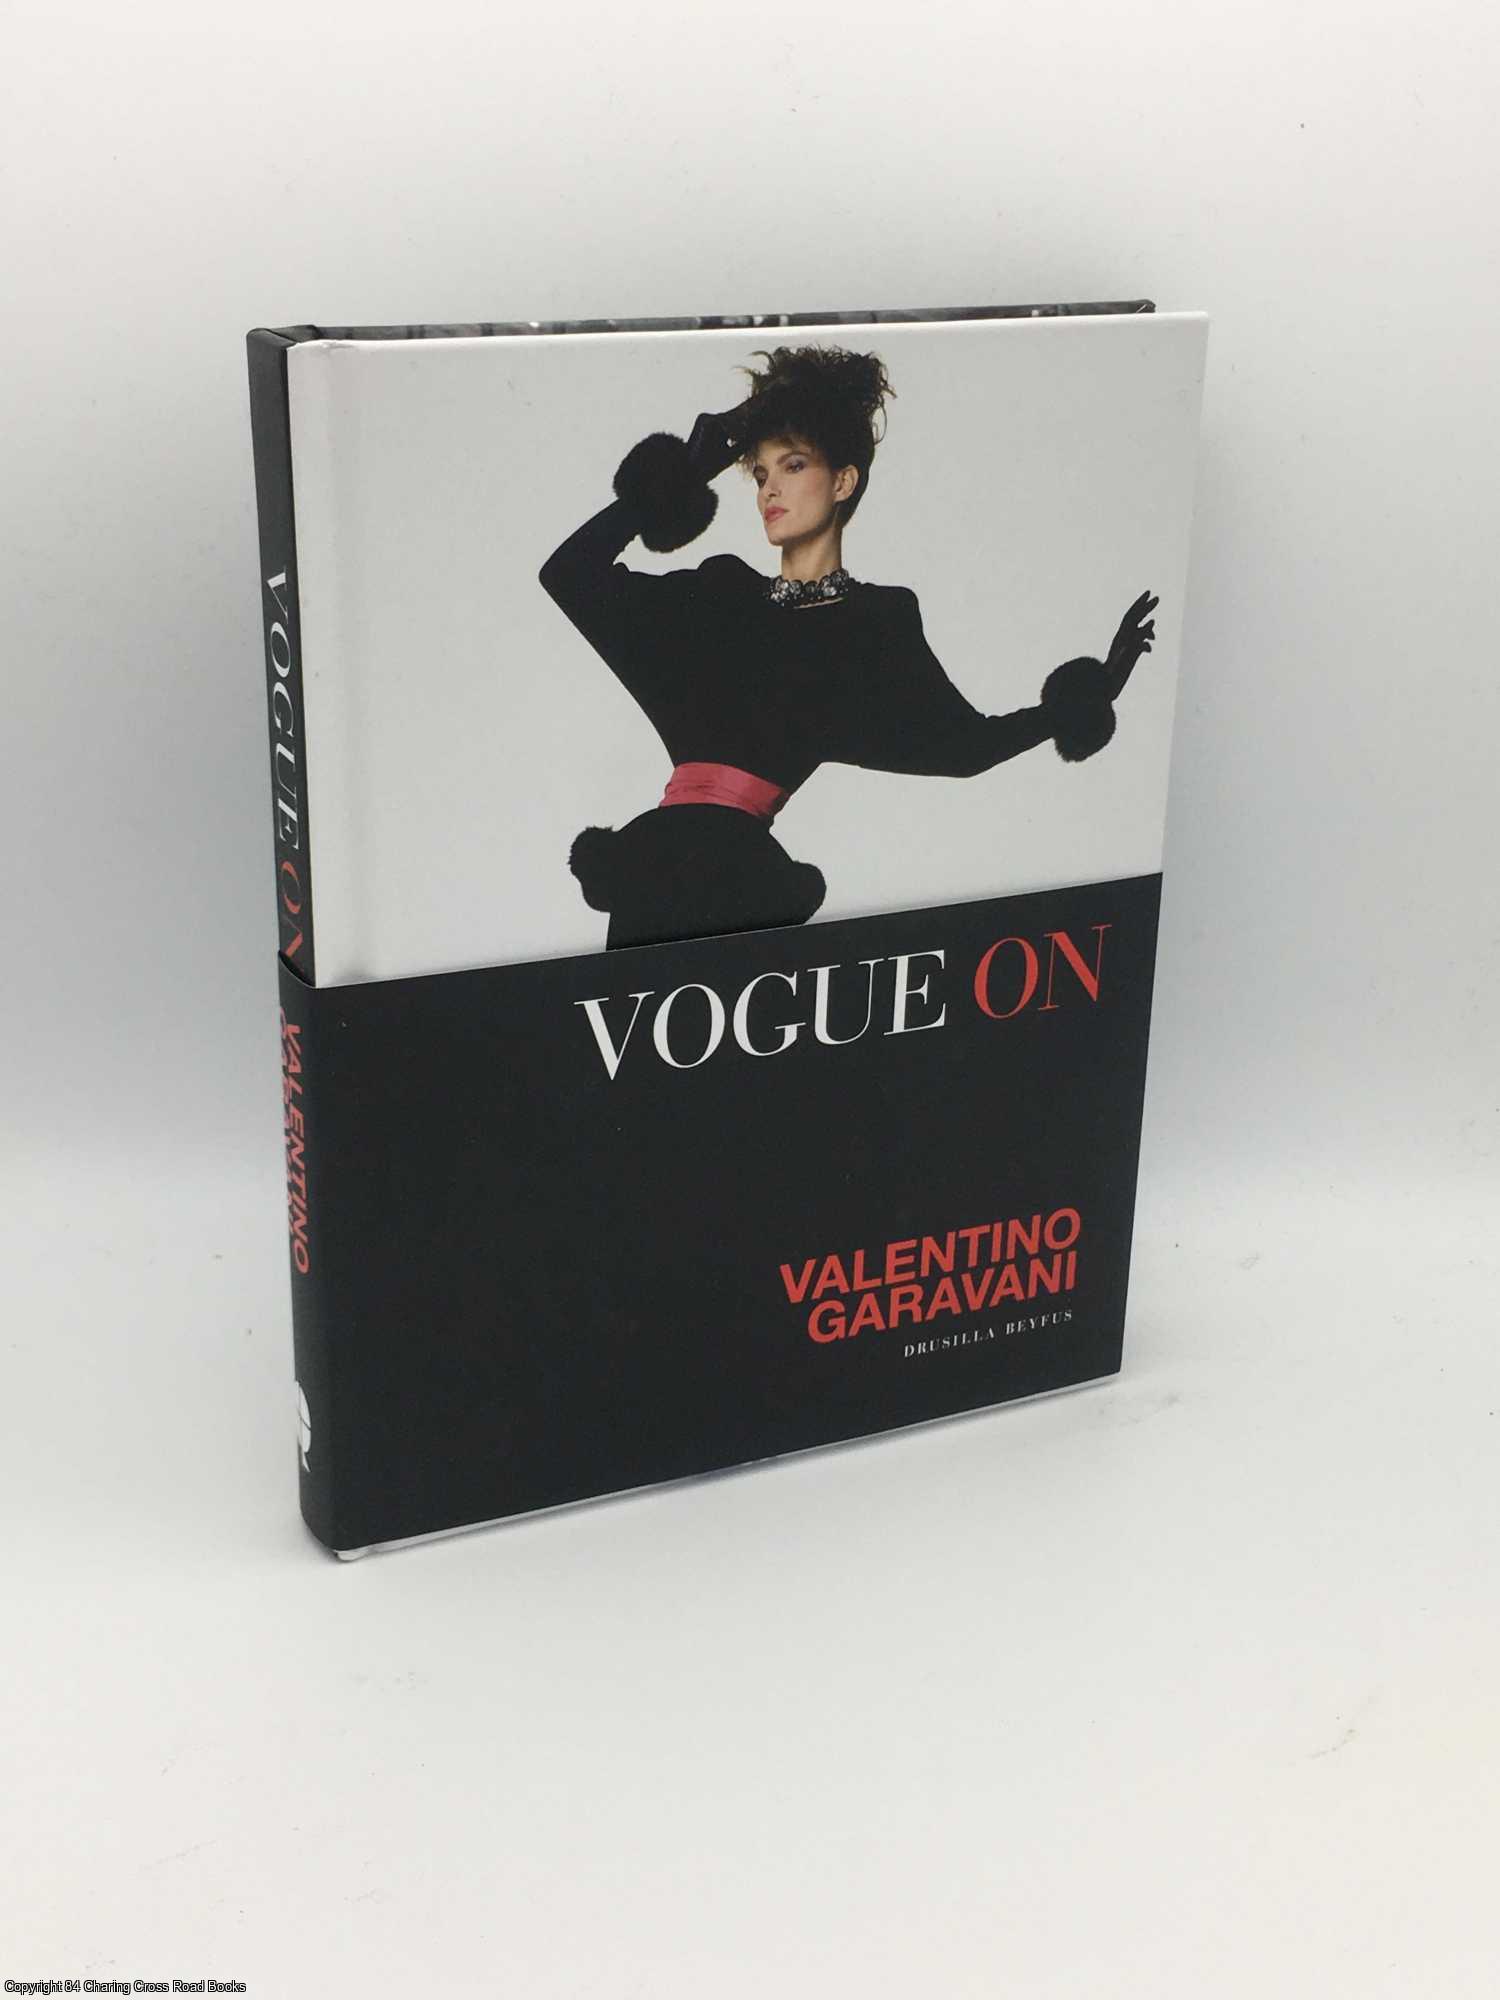 Beyfus, Drusilla - Vogue On Valentino Garavani